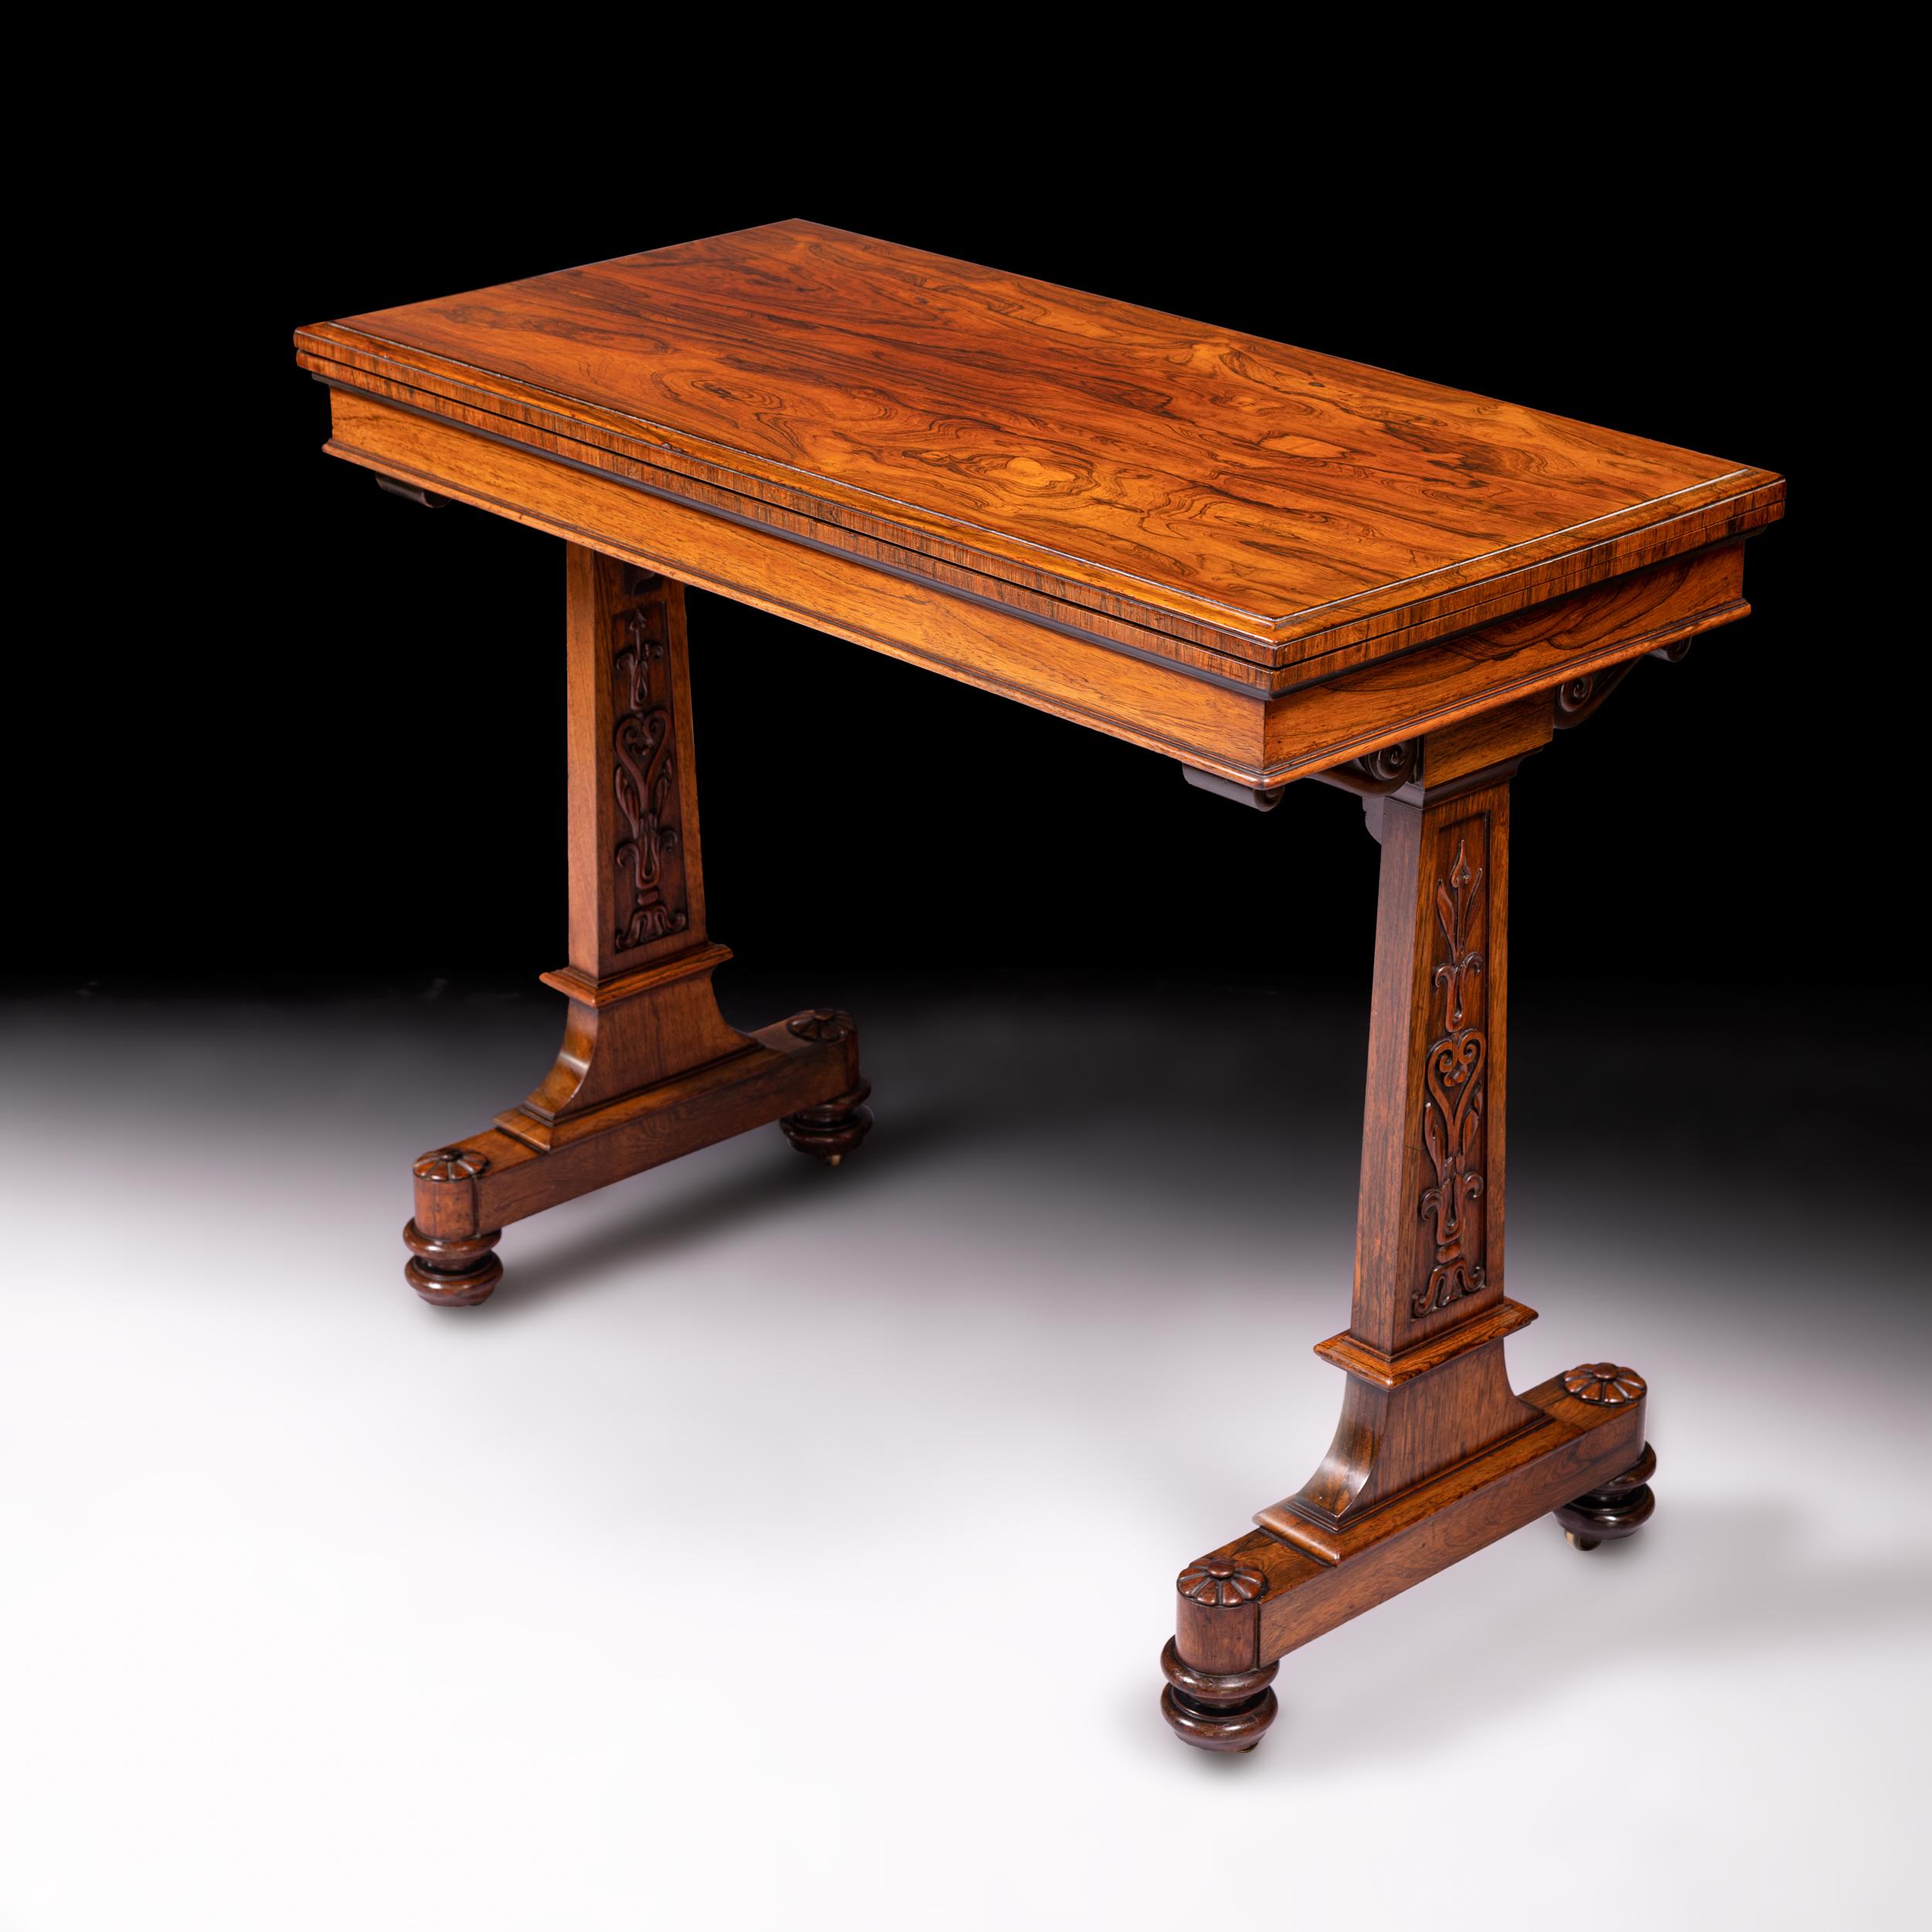 Ein feiner Qualität William IV Palisander Kartentisch gestempelt T & G Seddon mit geformten Rand und drehbarem Top, Silhouette Ende unterstützt und auf gedrehten Beinen mit Rollen erhöht. Die Beine ziehen sich zur Tischmitte hin, wenn der Tisch